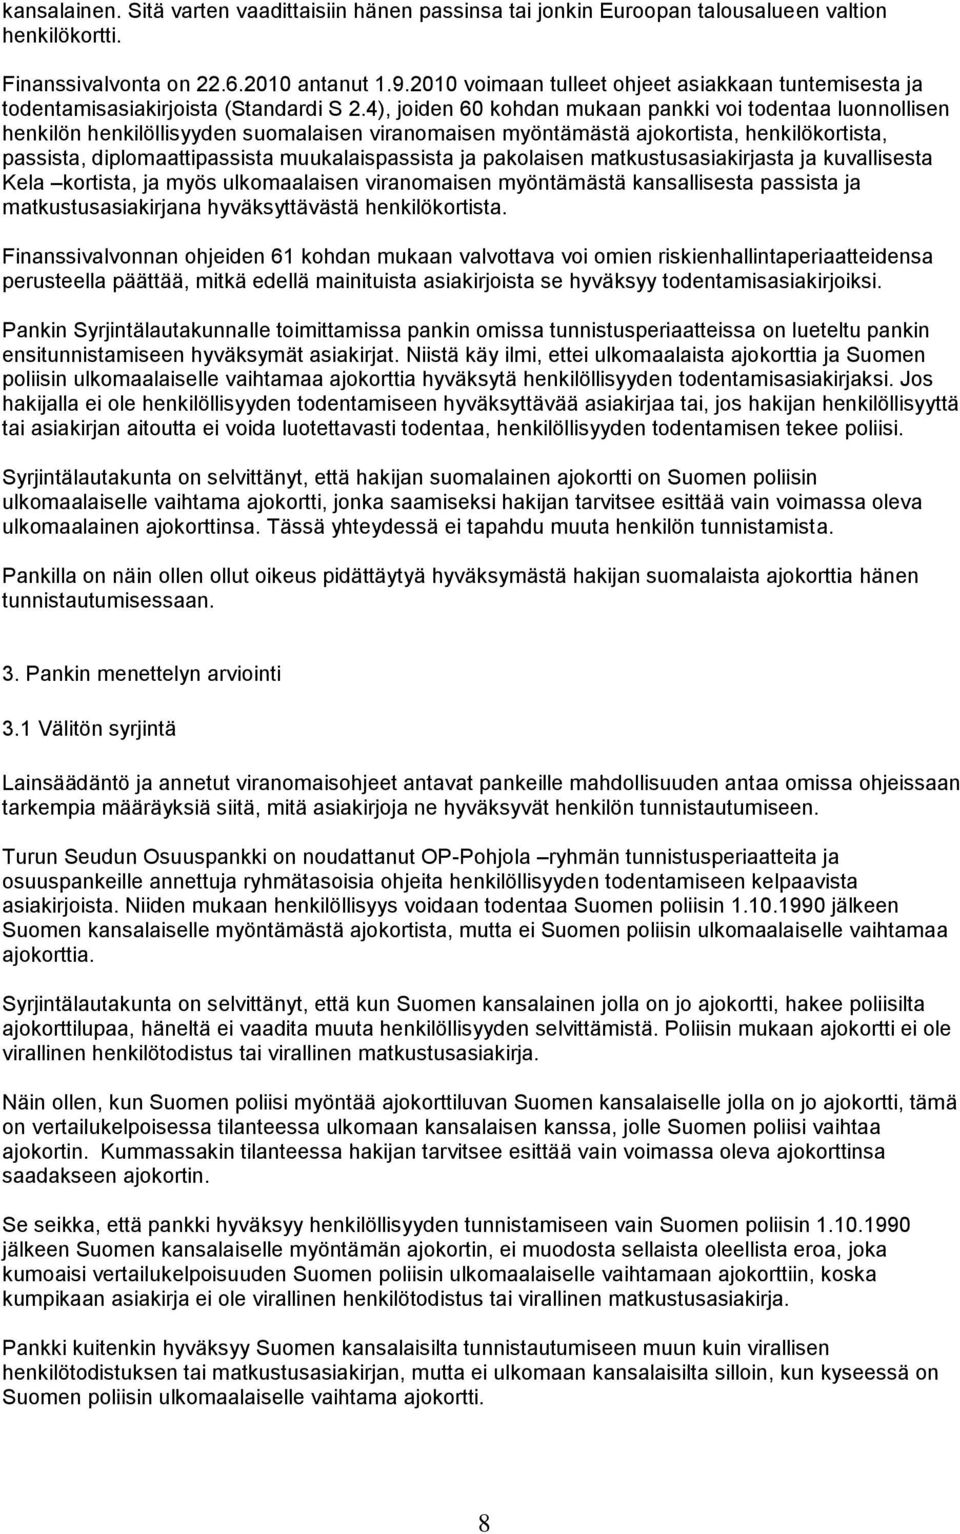 4), joiden 60 kohdan mukaan pankki voi todentaa luonnollisen henkilön henkilöllisyyden suomalaisen viranomaisen myöntämästä ajokortista, henkilökortista, passista, diplomaattipassista